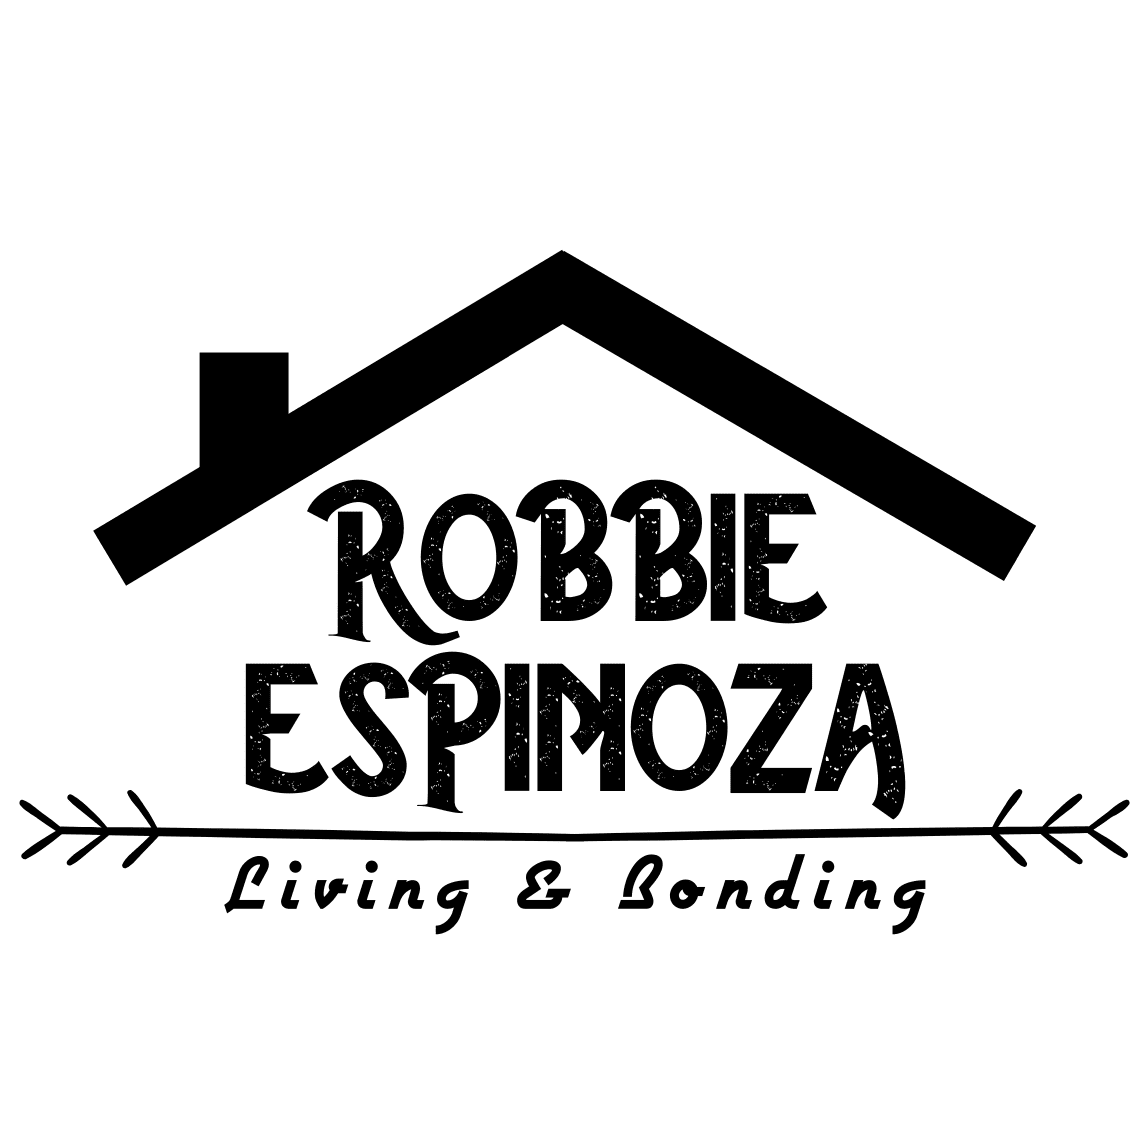 Robbie Espinoza